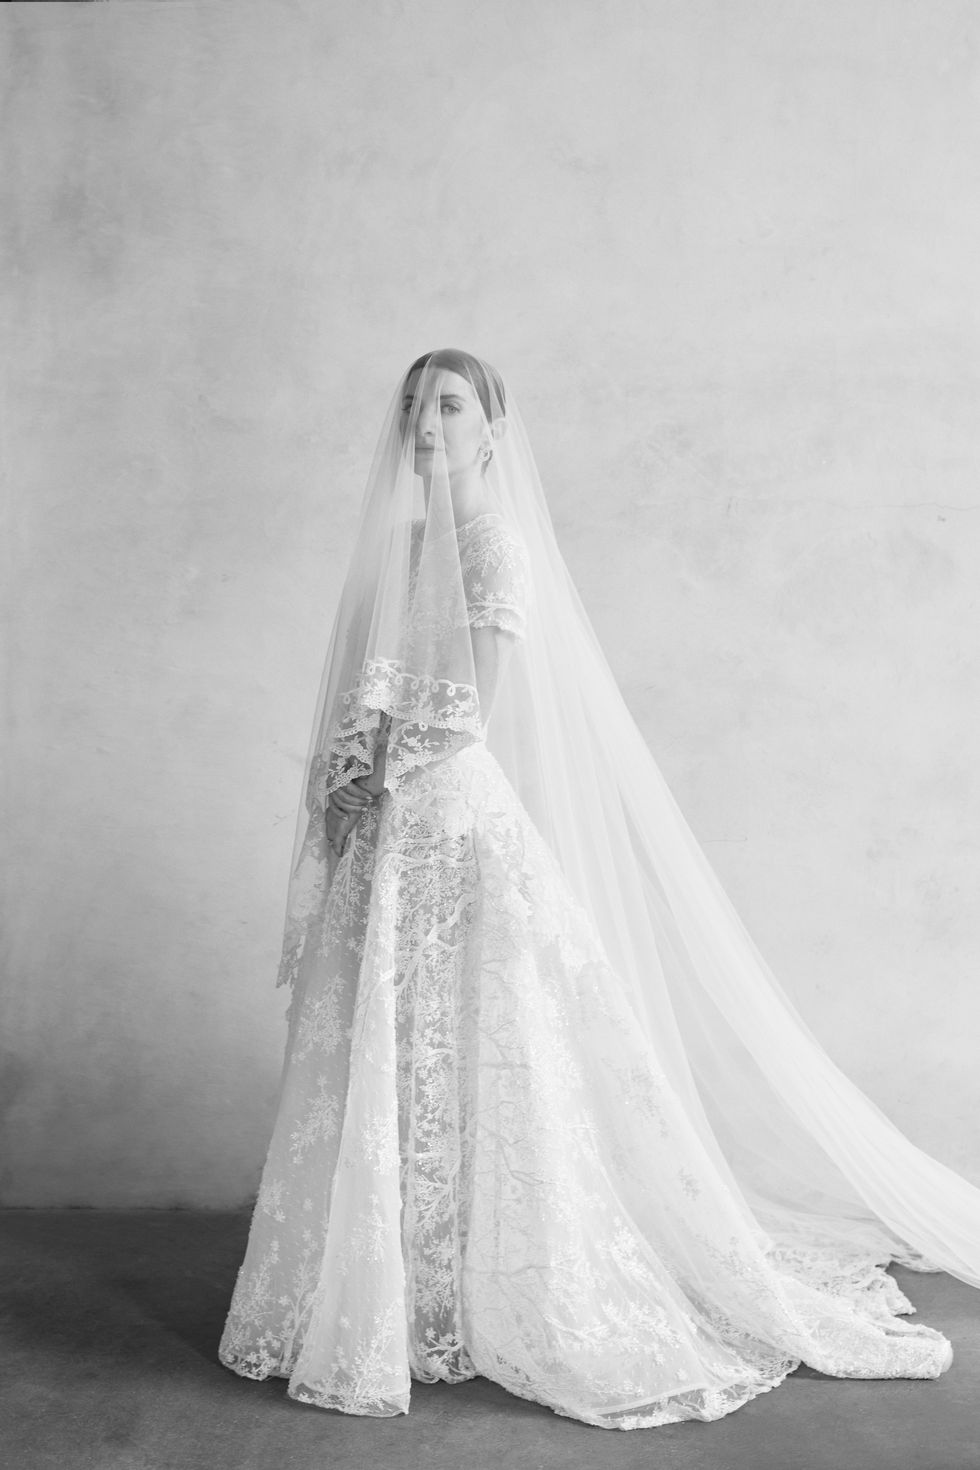 Meet the Wedding Veil Whisperer: Alison Miller - Wedding Veil Expert